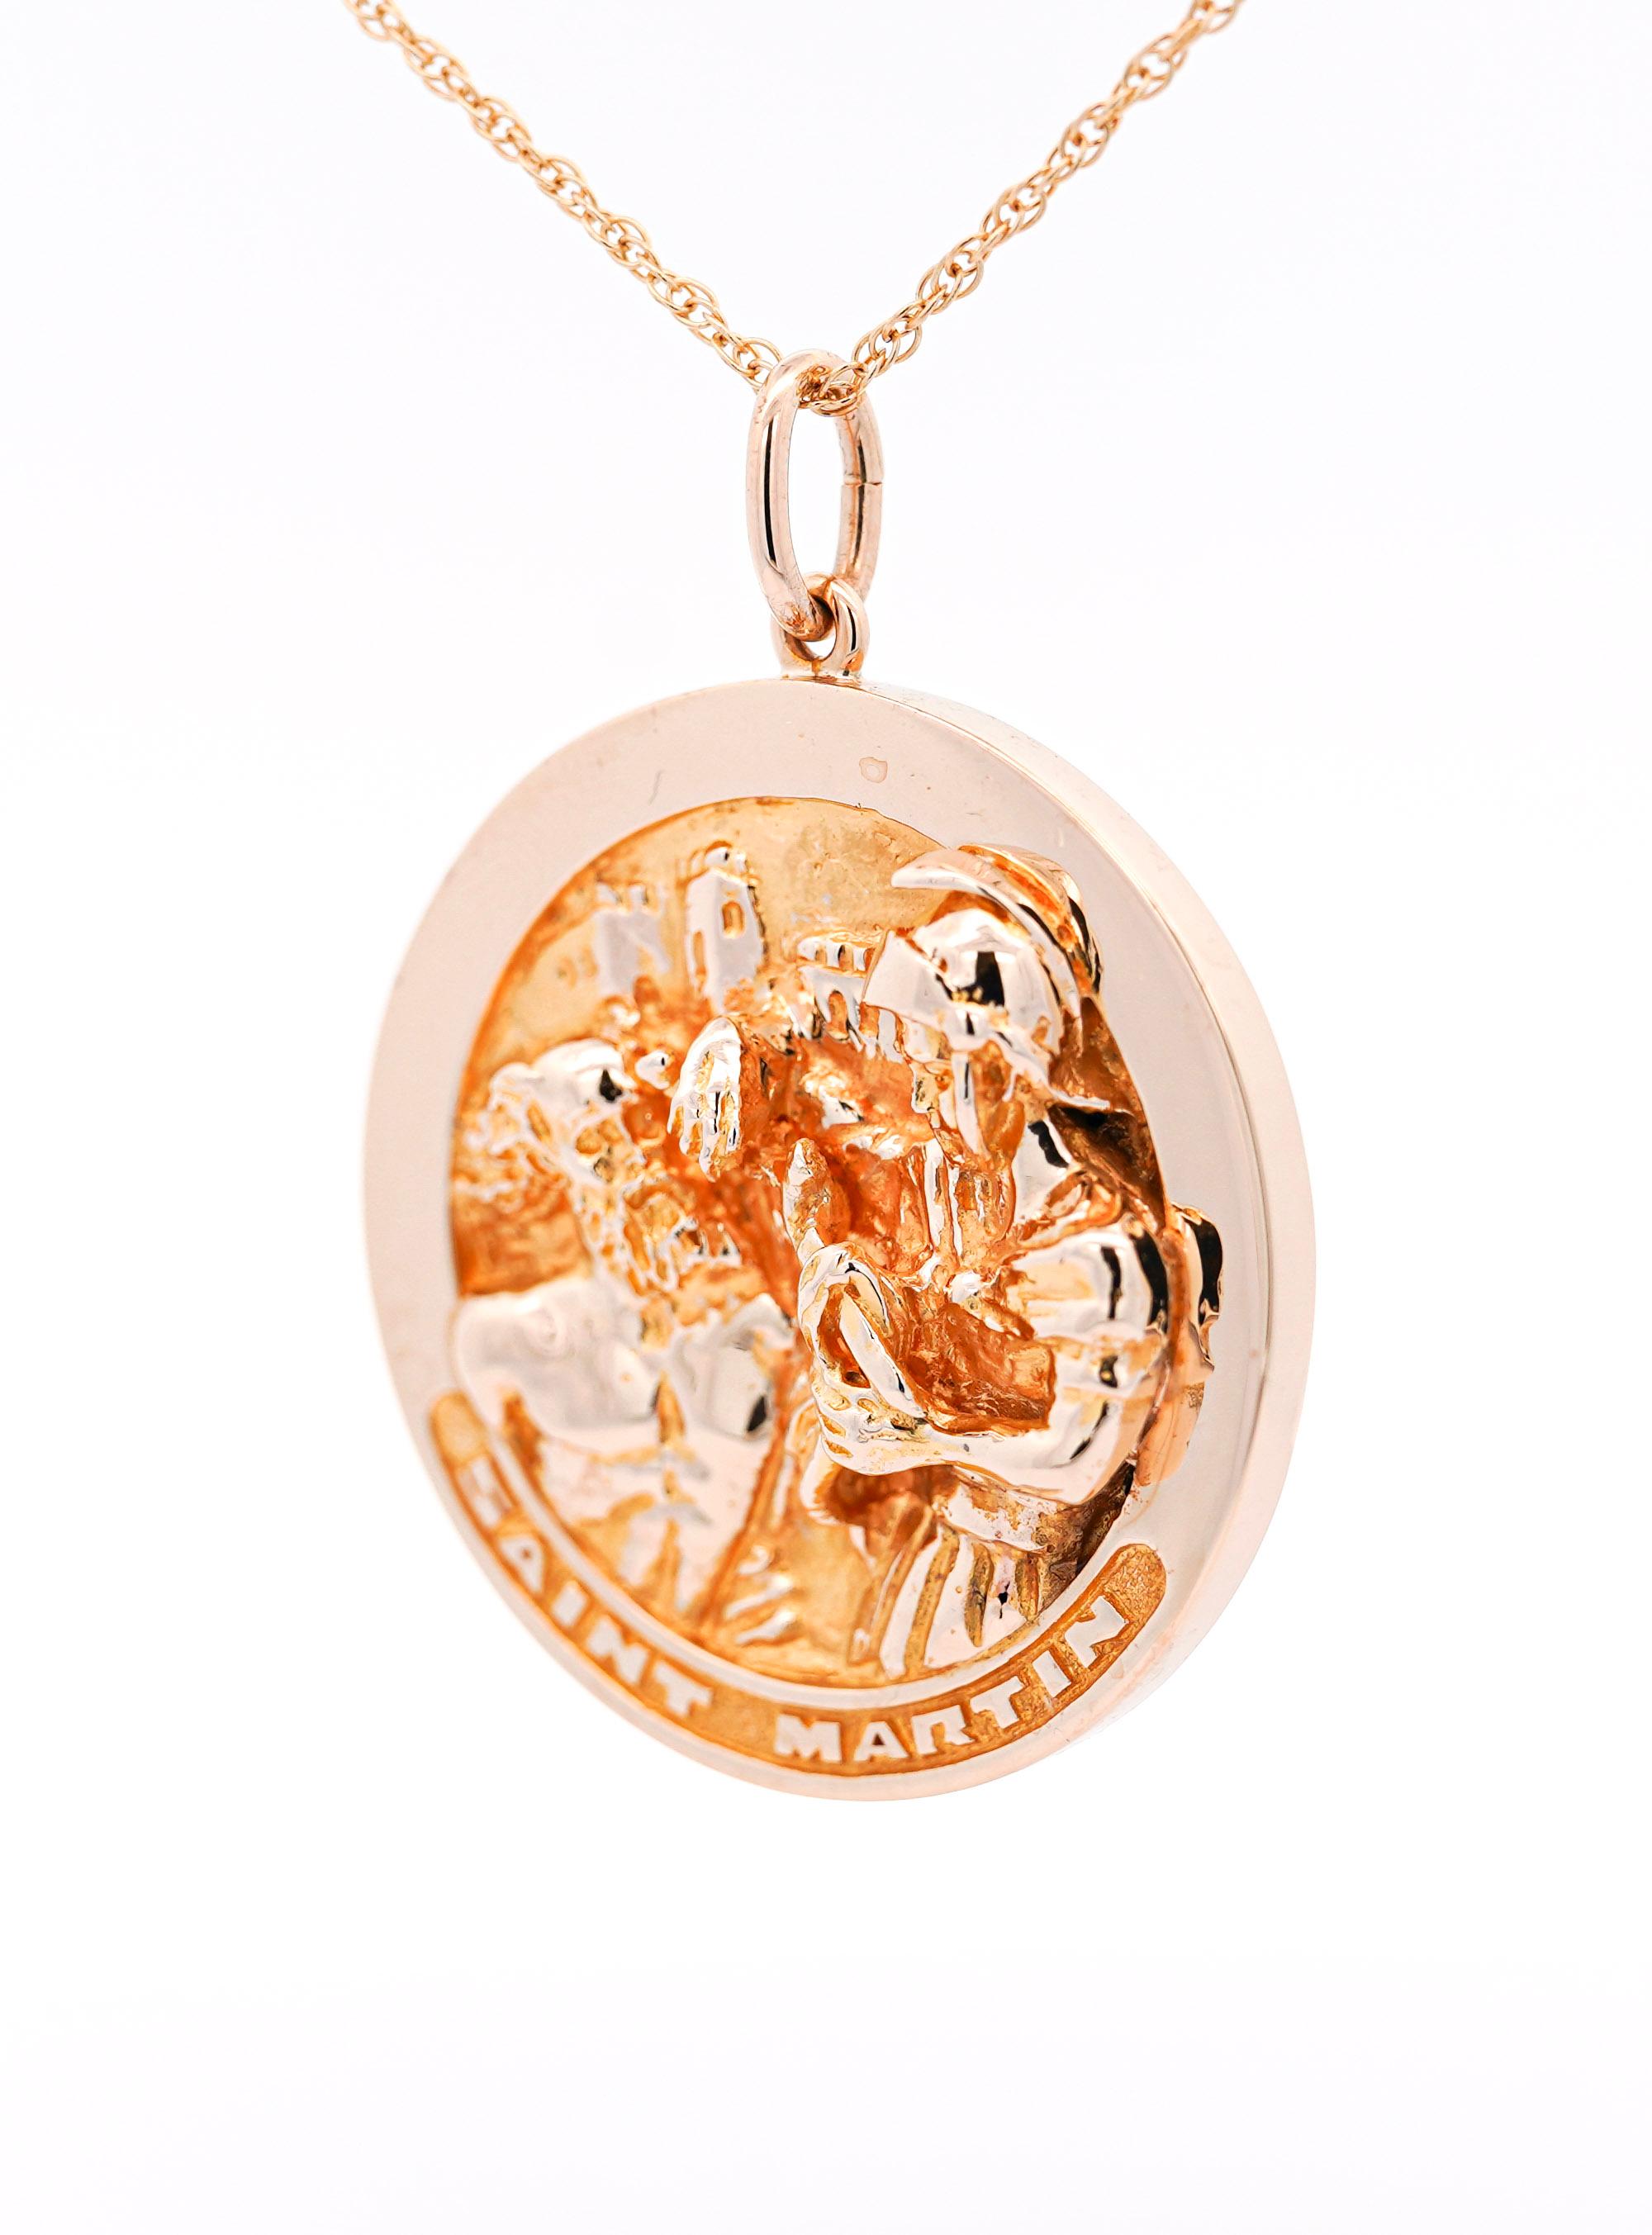 Vintage 14k Solid Gold Carved Medallion Pendant (Set of 3) by William Ruser For Sale 5